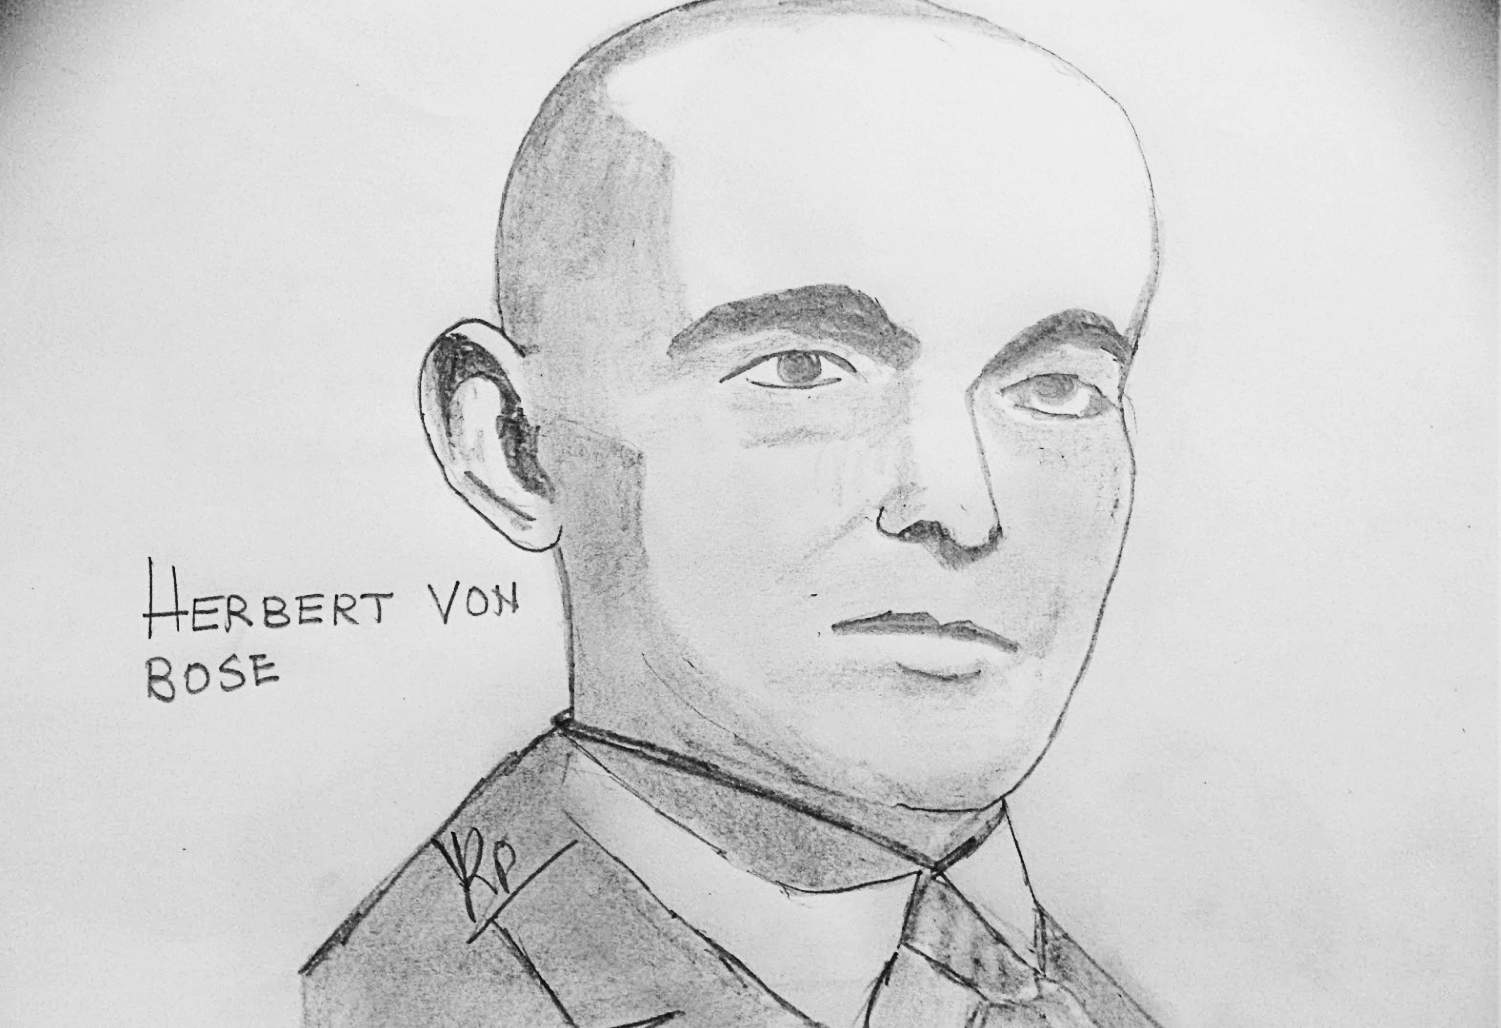 A sketch of Herbert von Bose, Nazi whistleblower, 1934